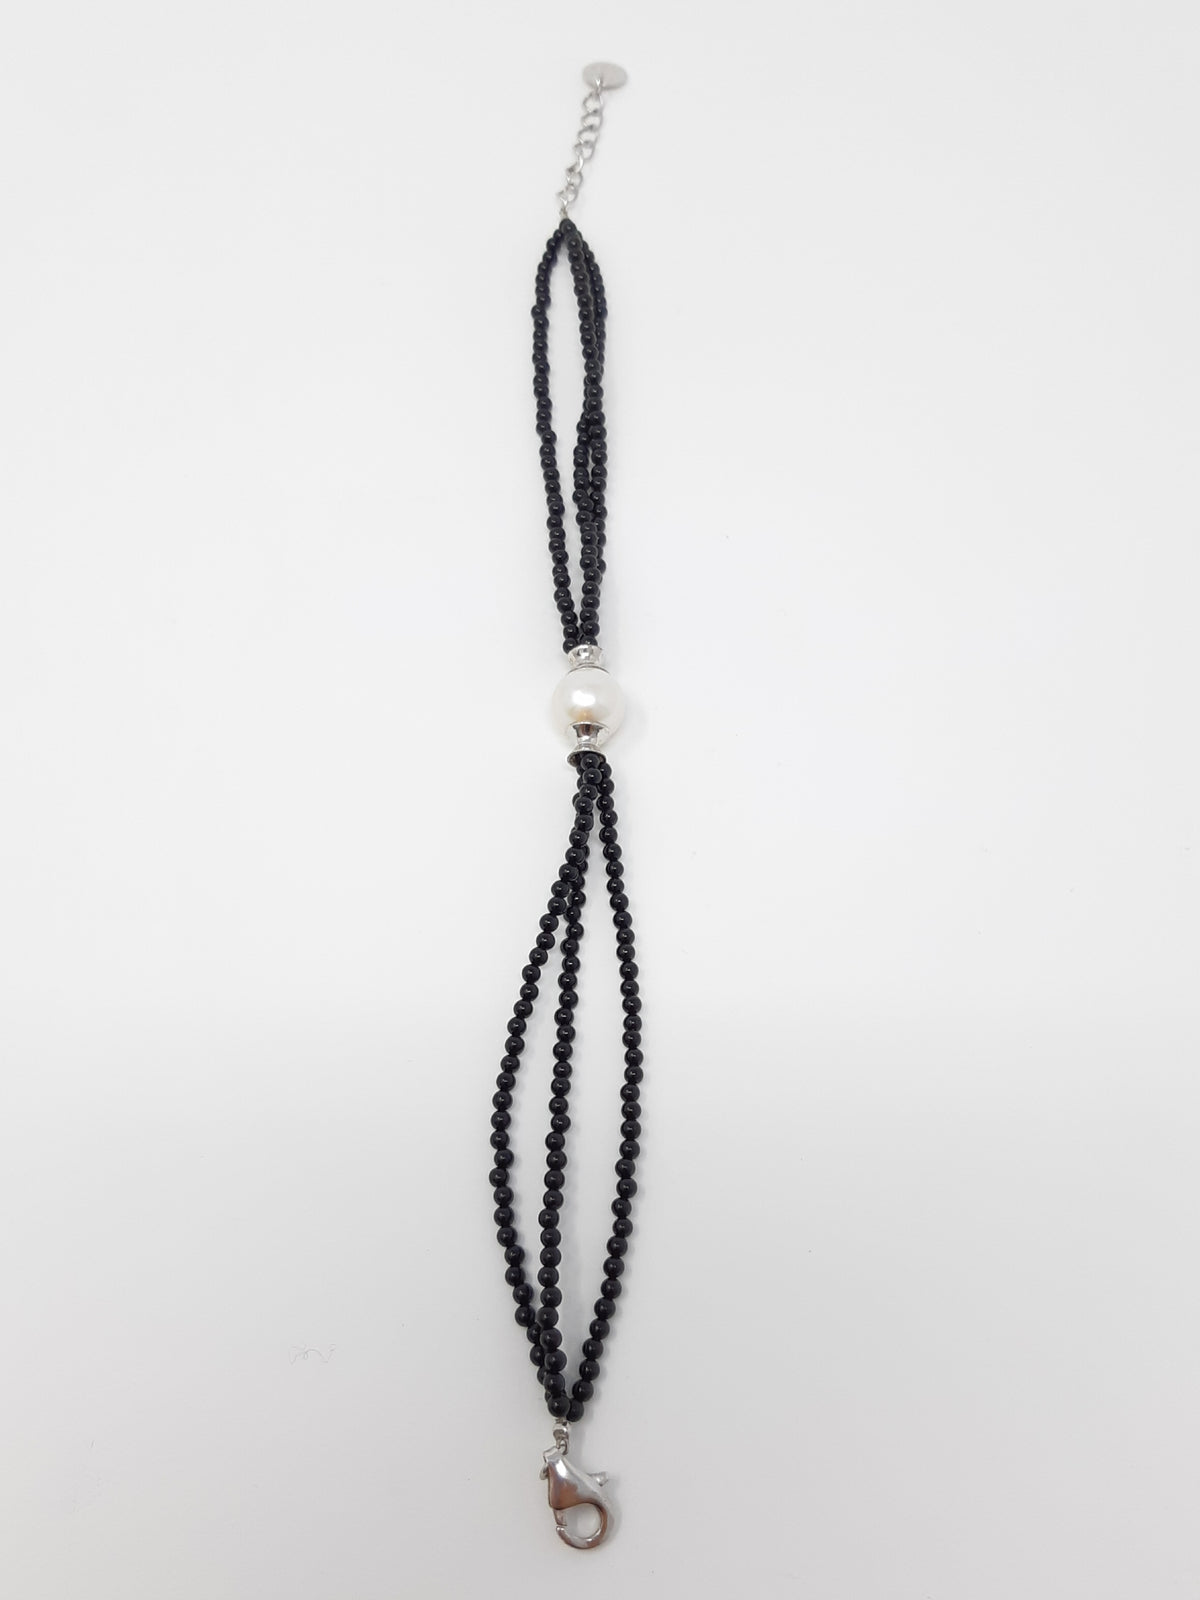 Pearl Bracelet with Onyx